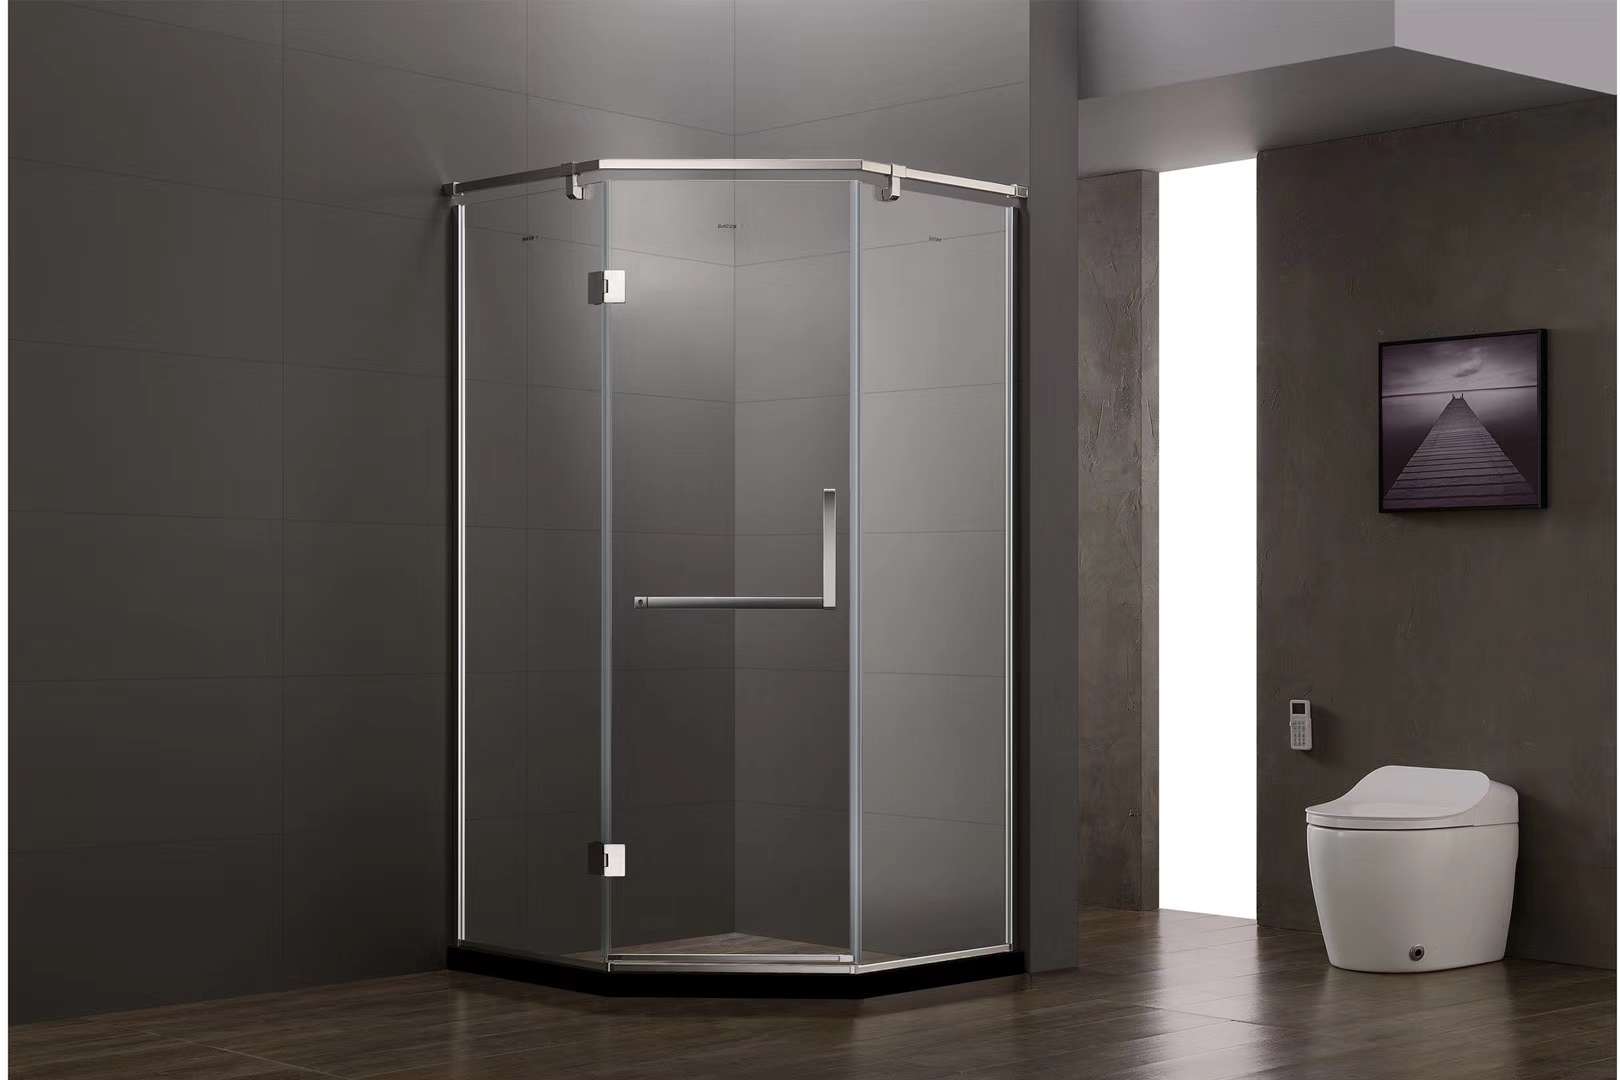 贝特超白水晶玻淋浴房18系列亮光安全不留指纹一体化设计